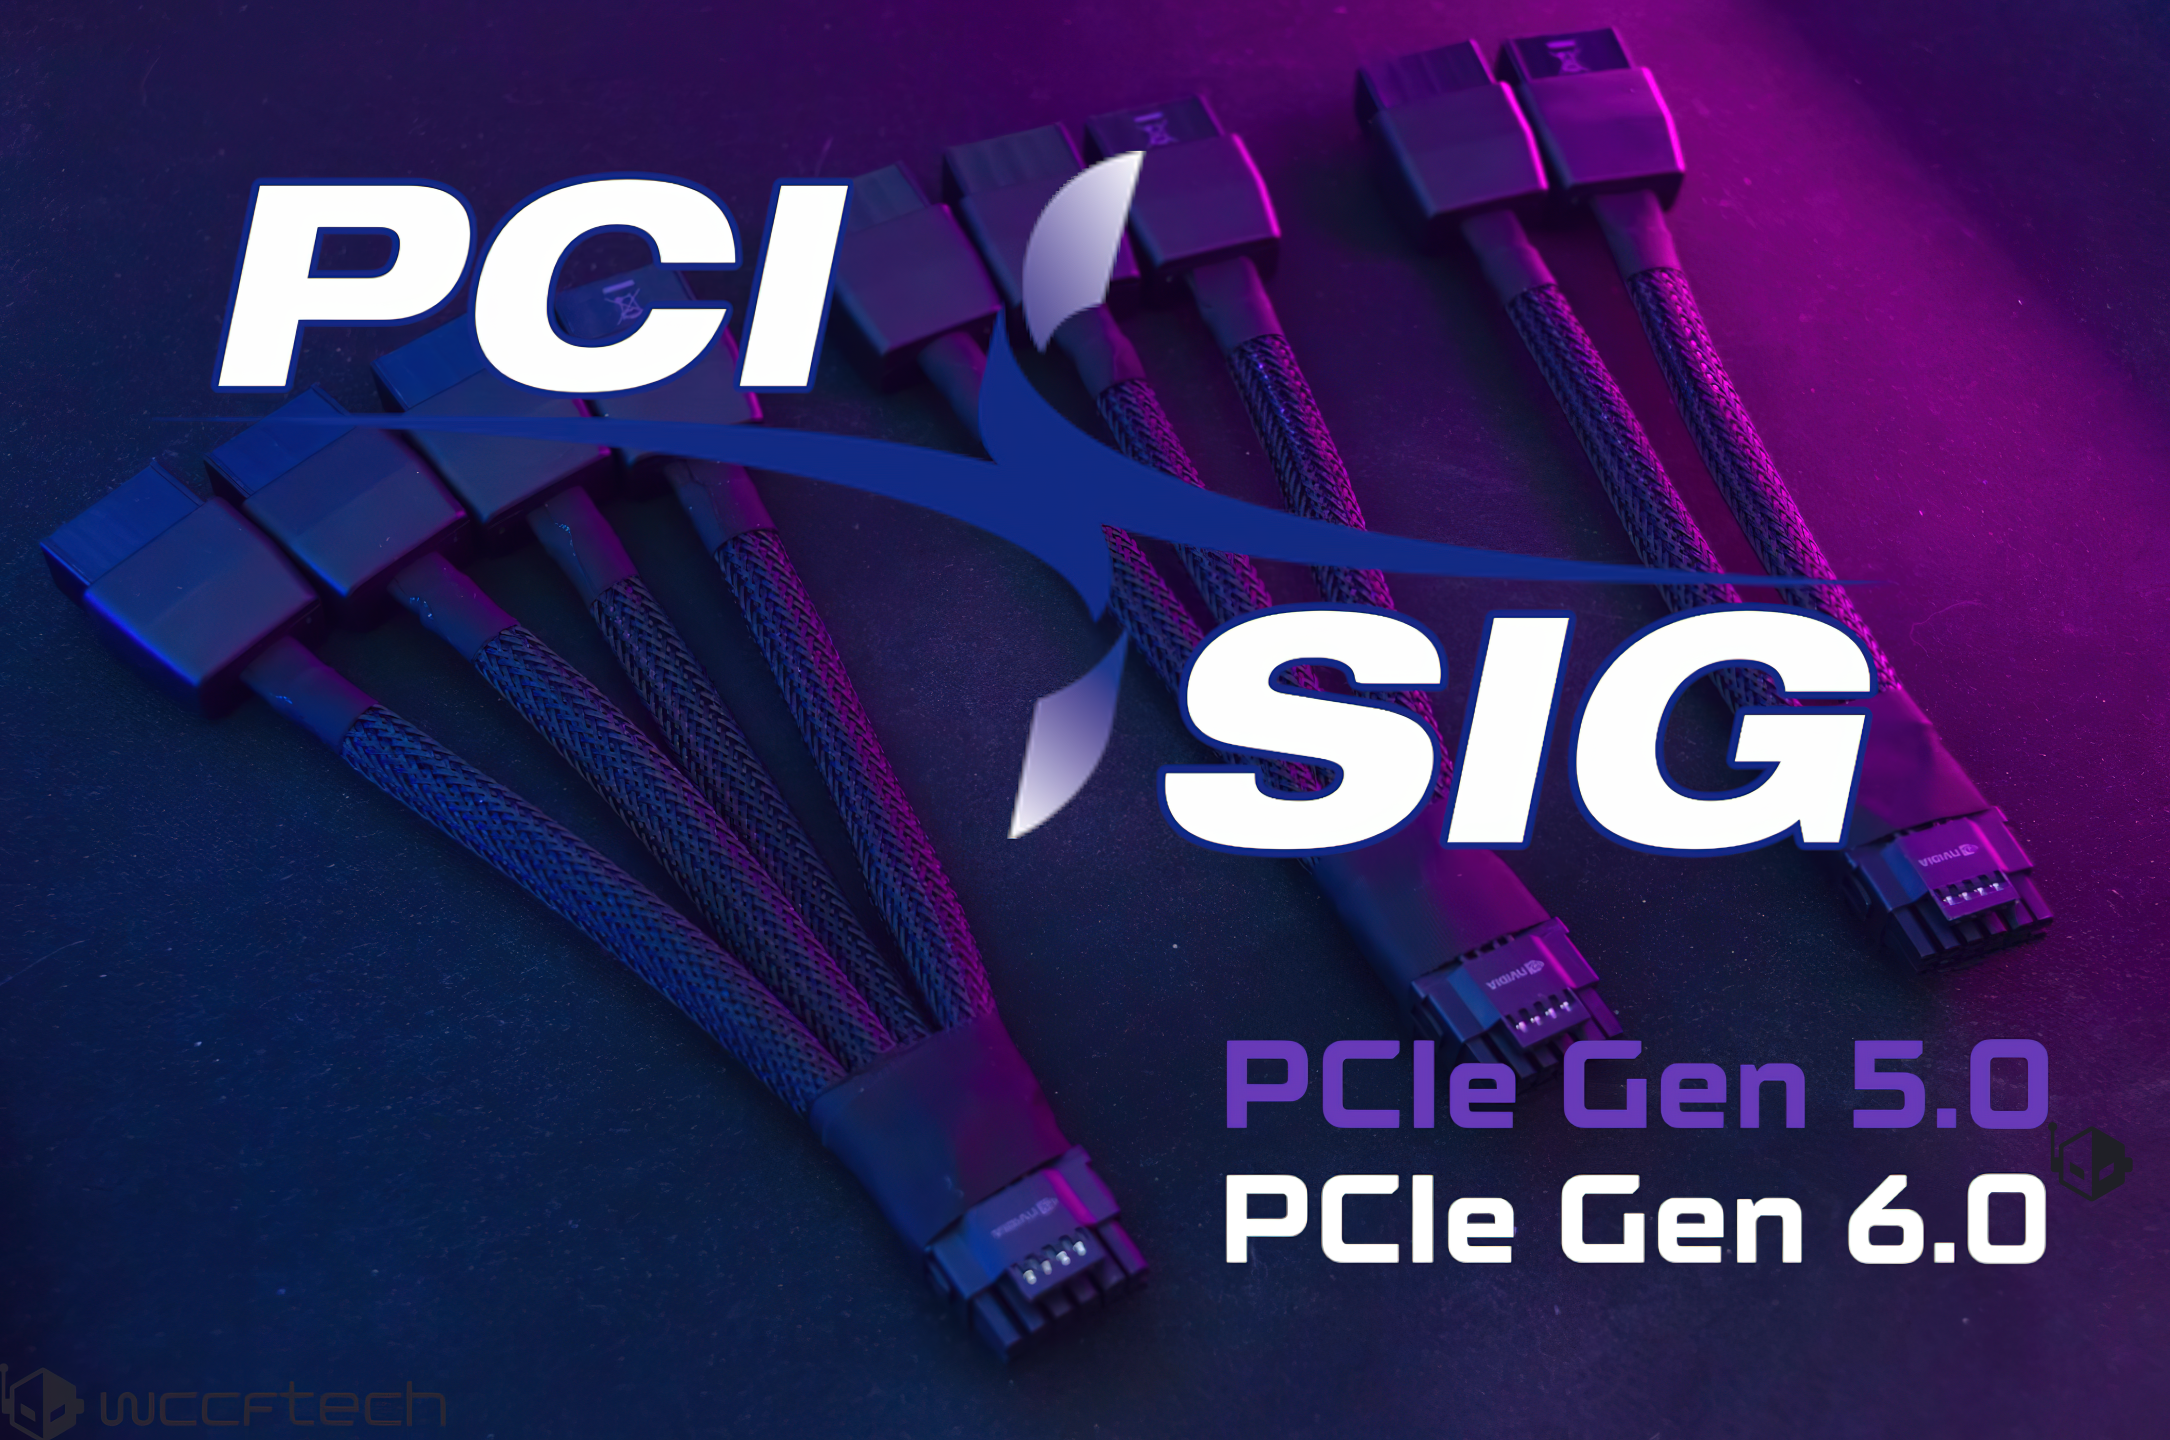 PCI-SIG.png